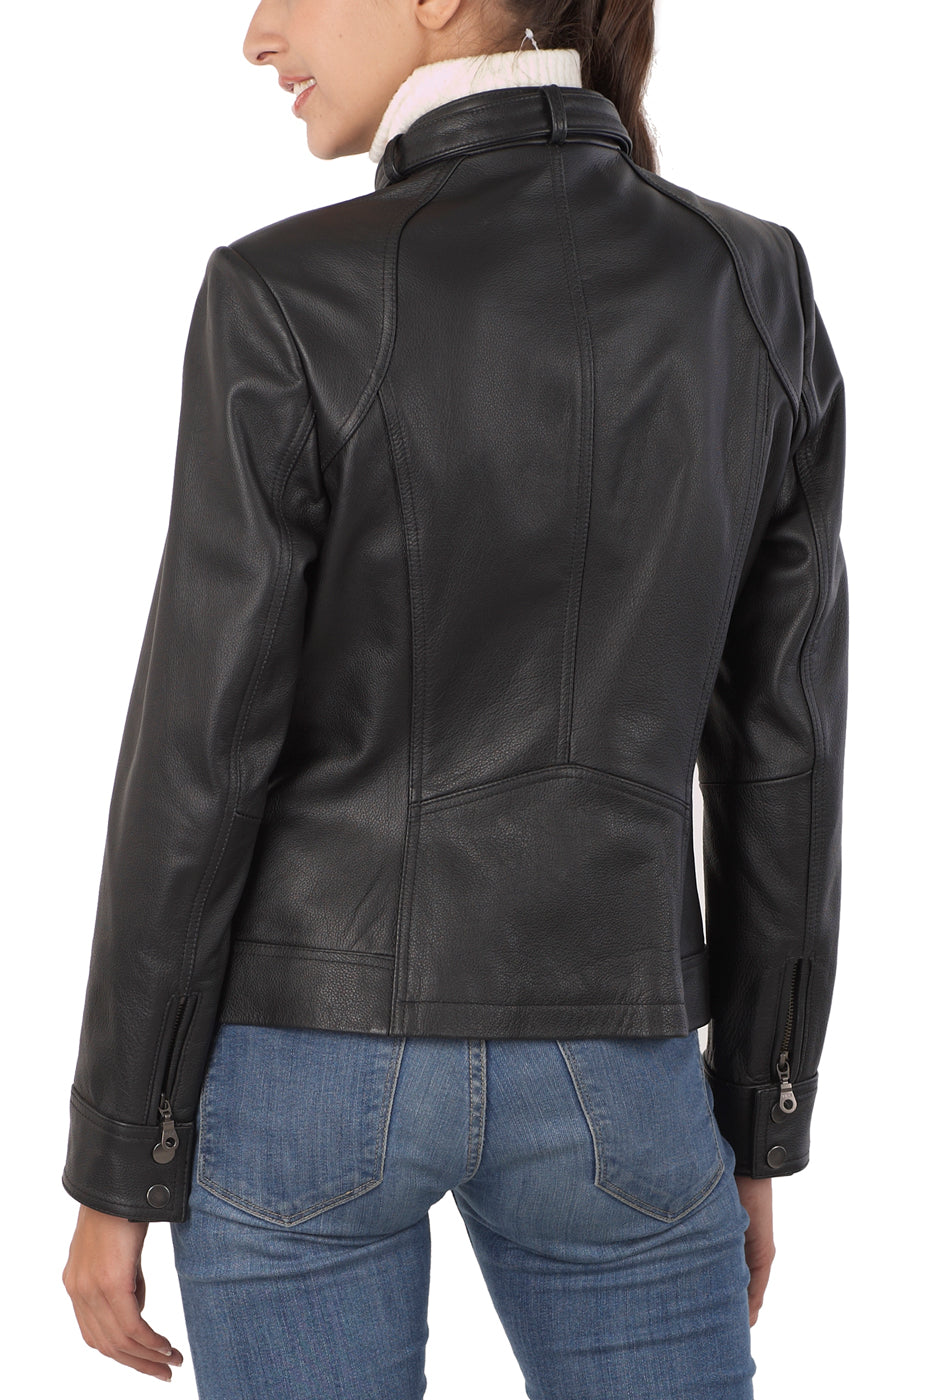 BGSD Women Julie Zip Front Lambskin Leather Jacket